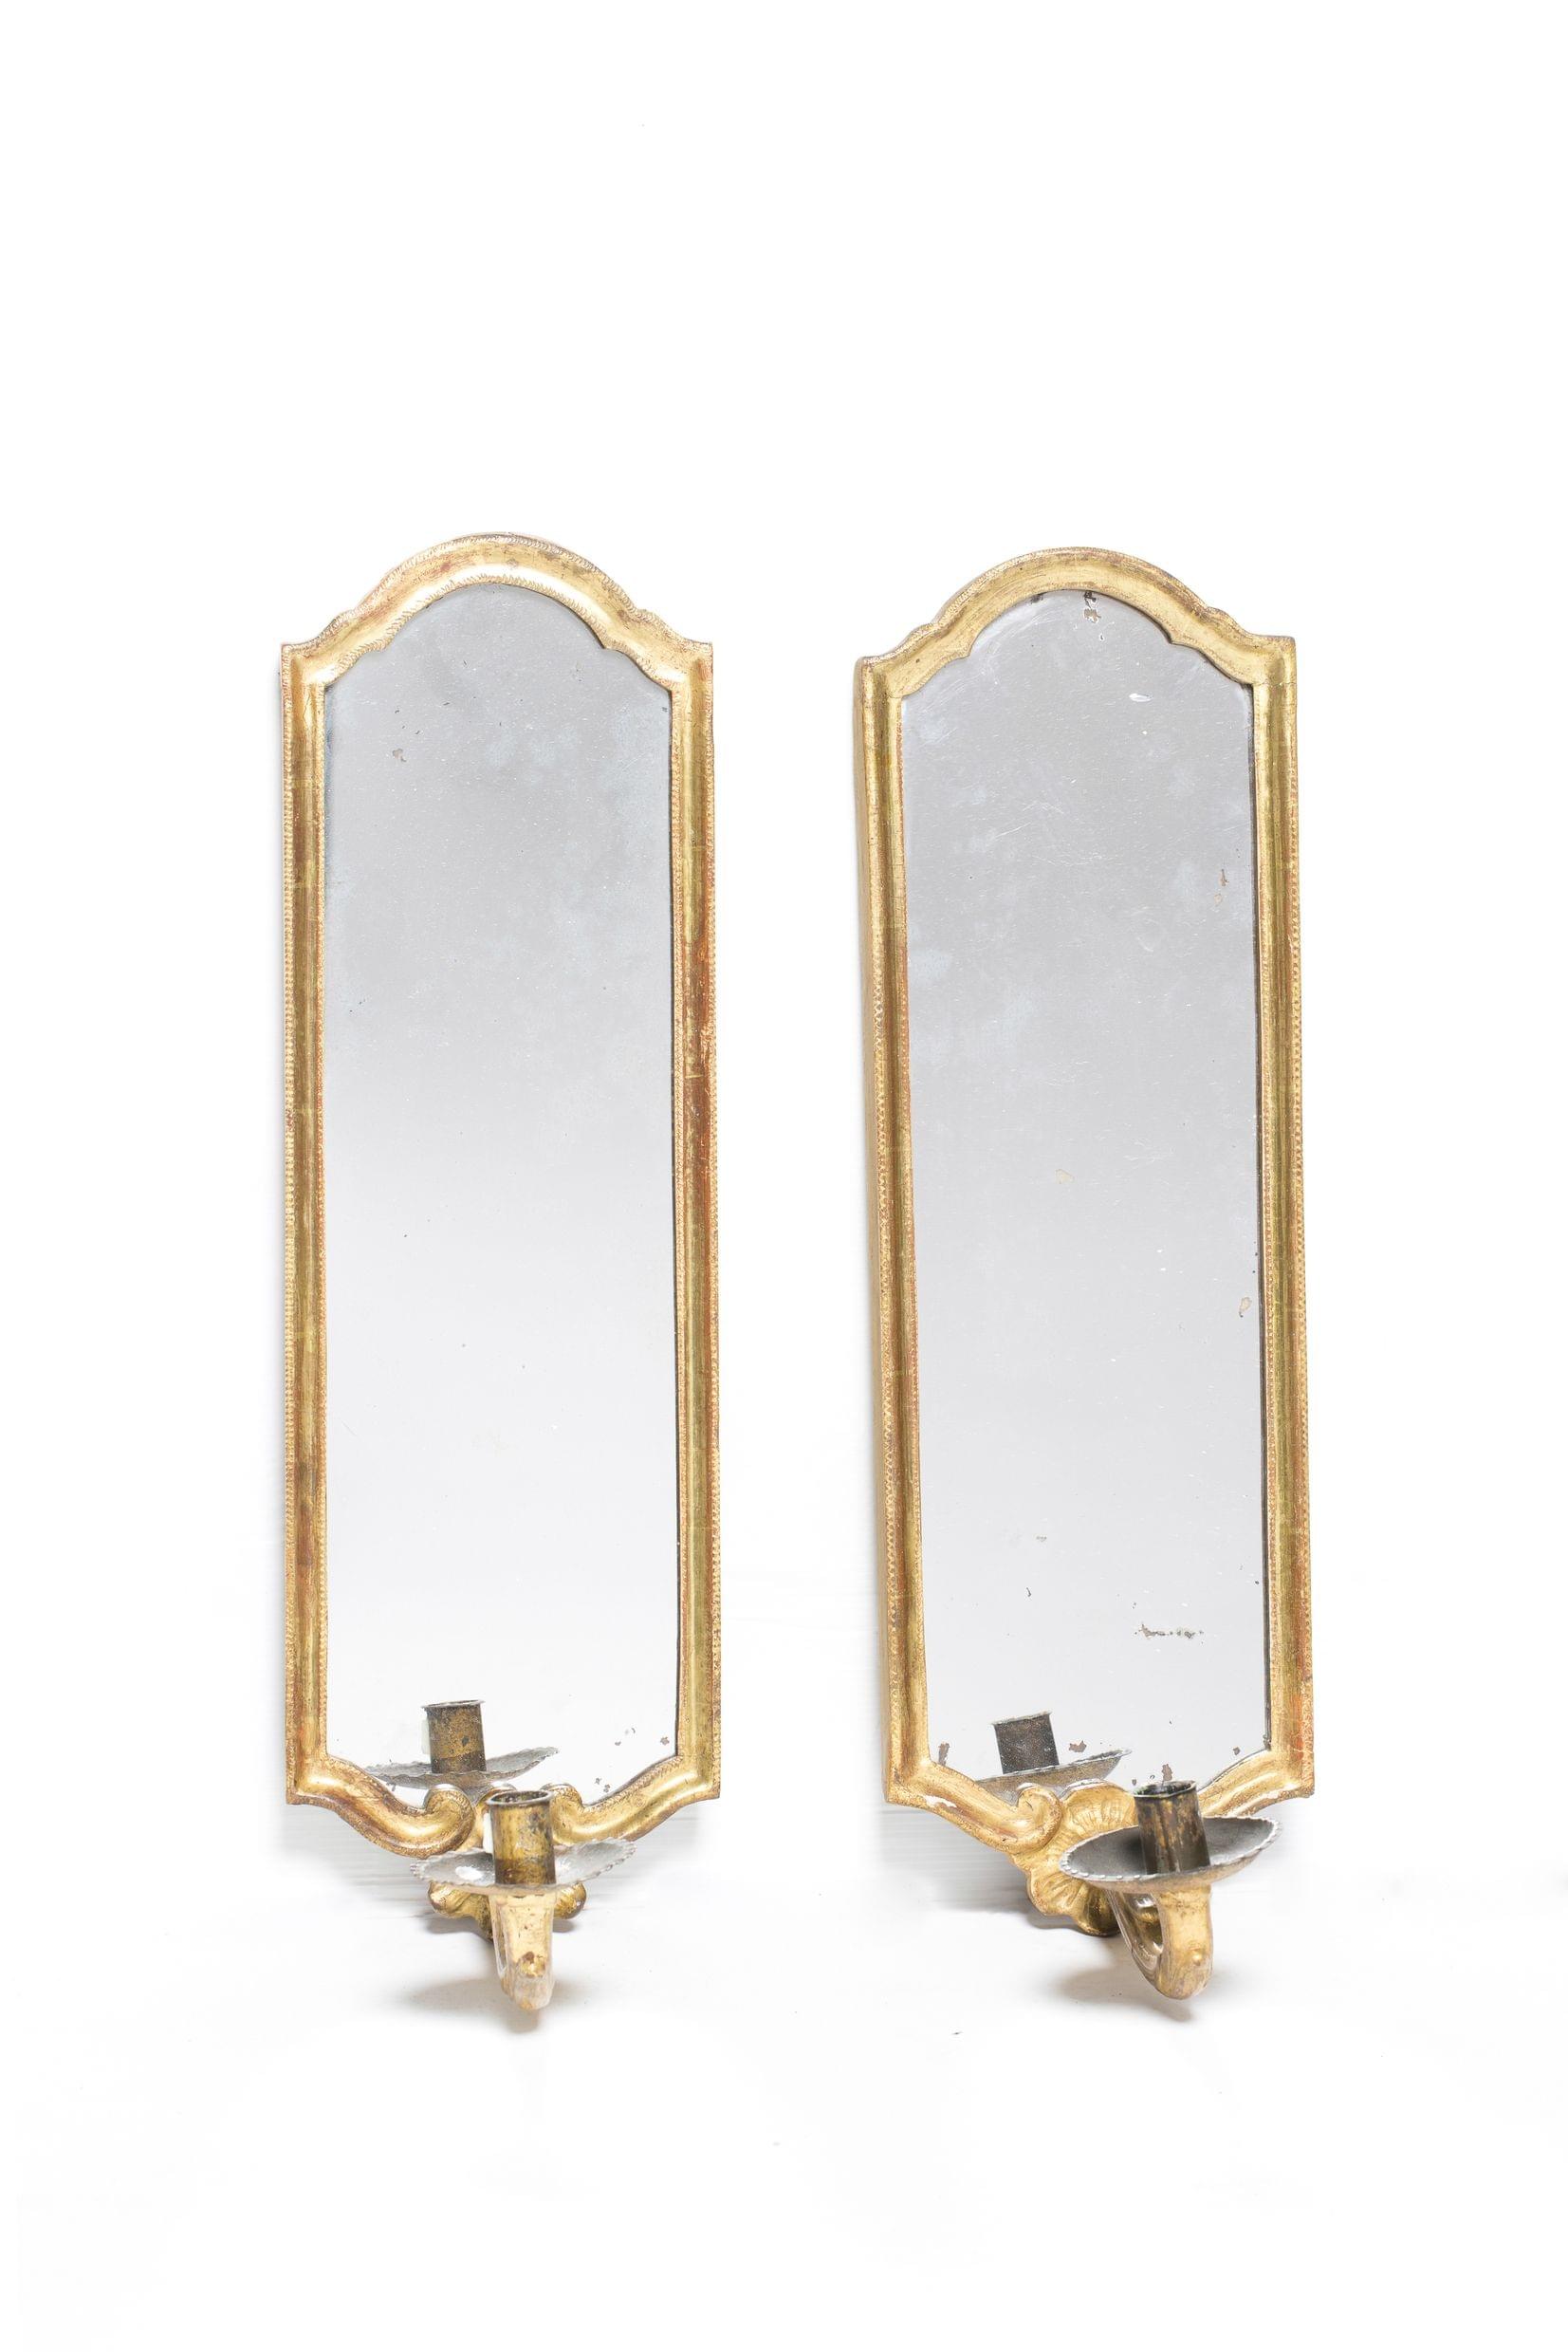 Paire d'appliques miroir à un bras de lumière, Berne, XVIIIe s